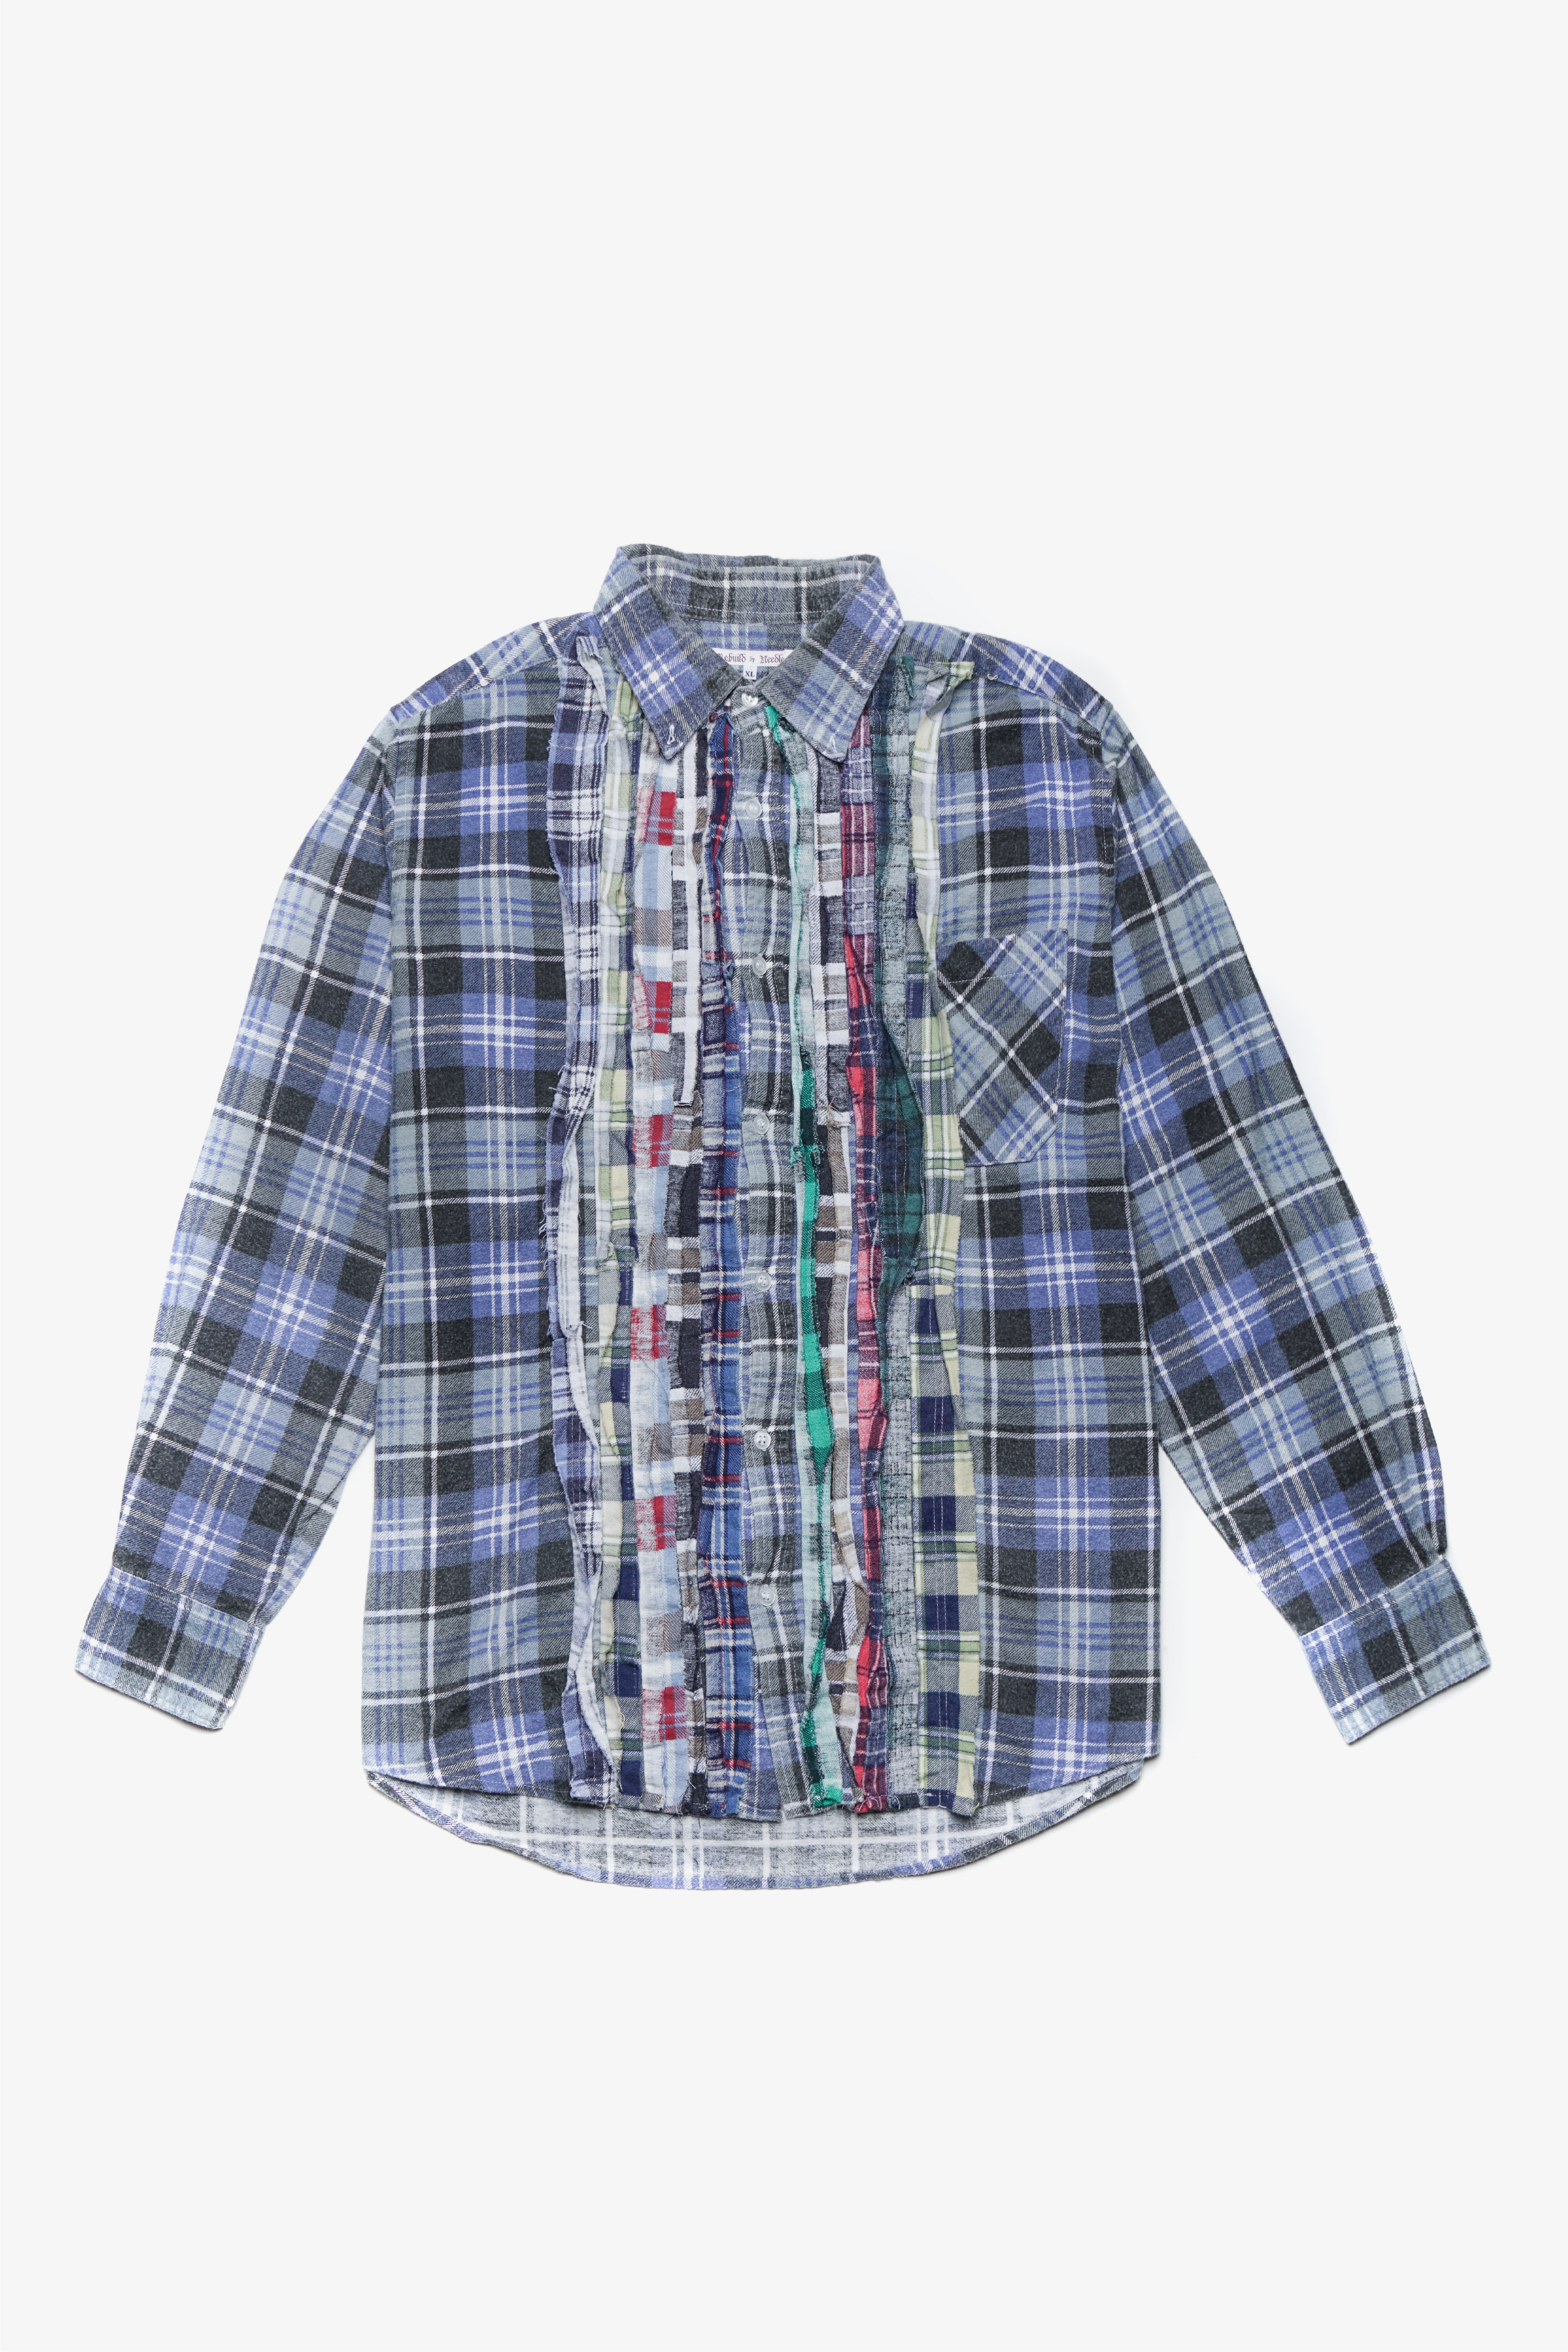 Selectshop FRAME - NEEDLES Flannel Ribbon Shirt - XL(B) Shirts Dubai